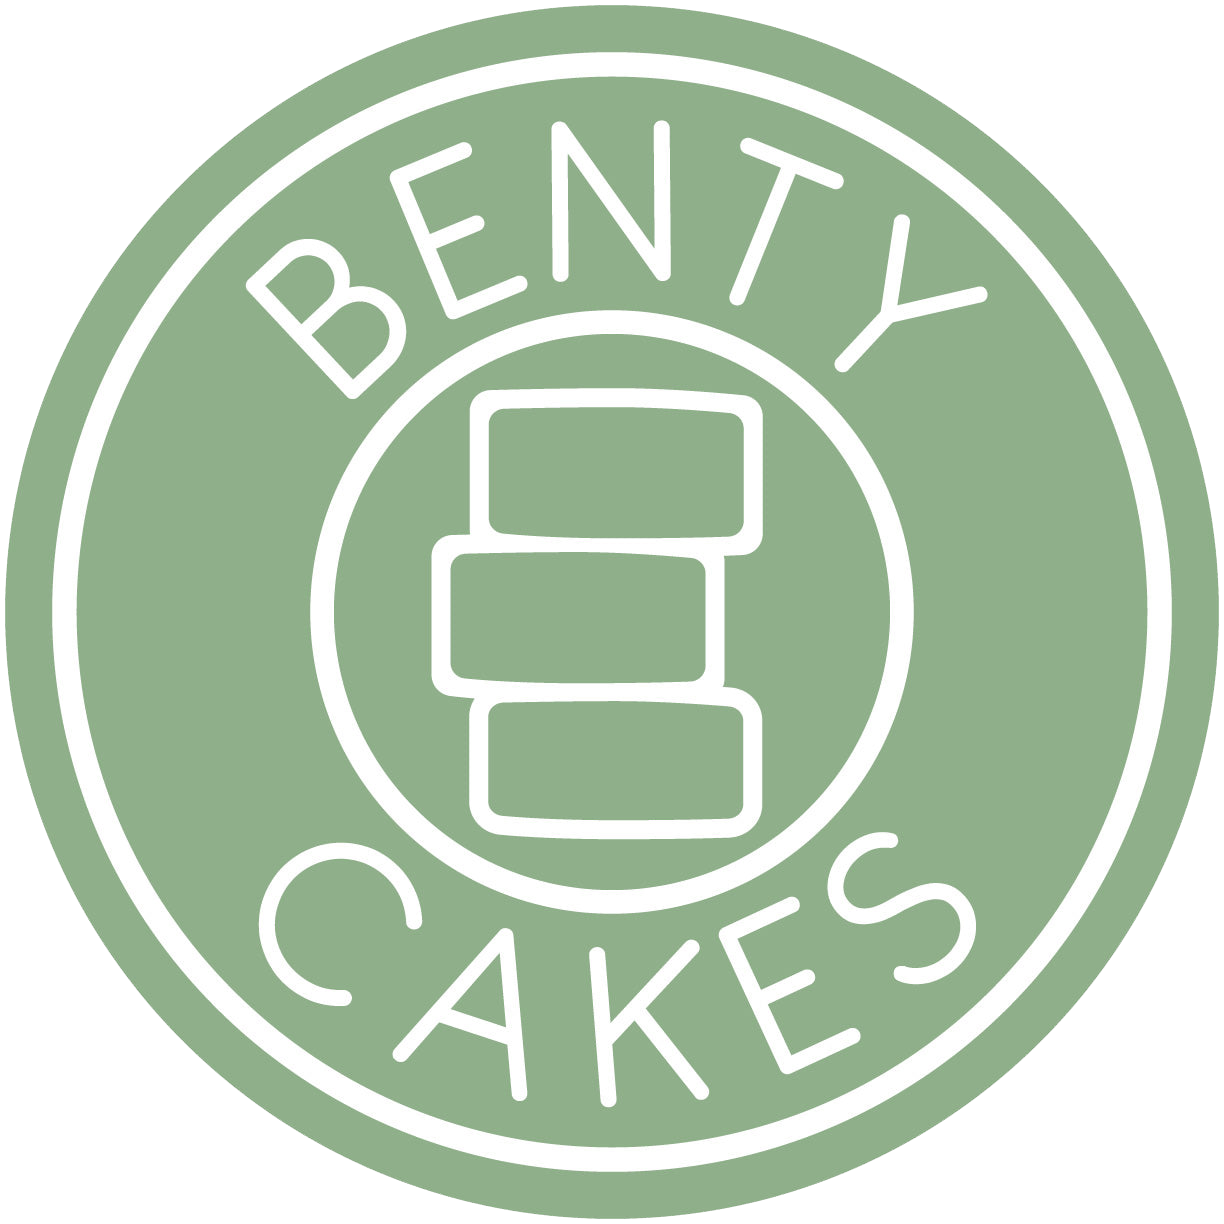 Benty Cakes LLC